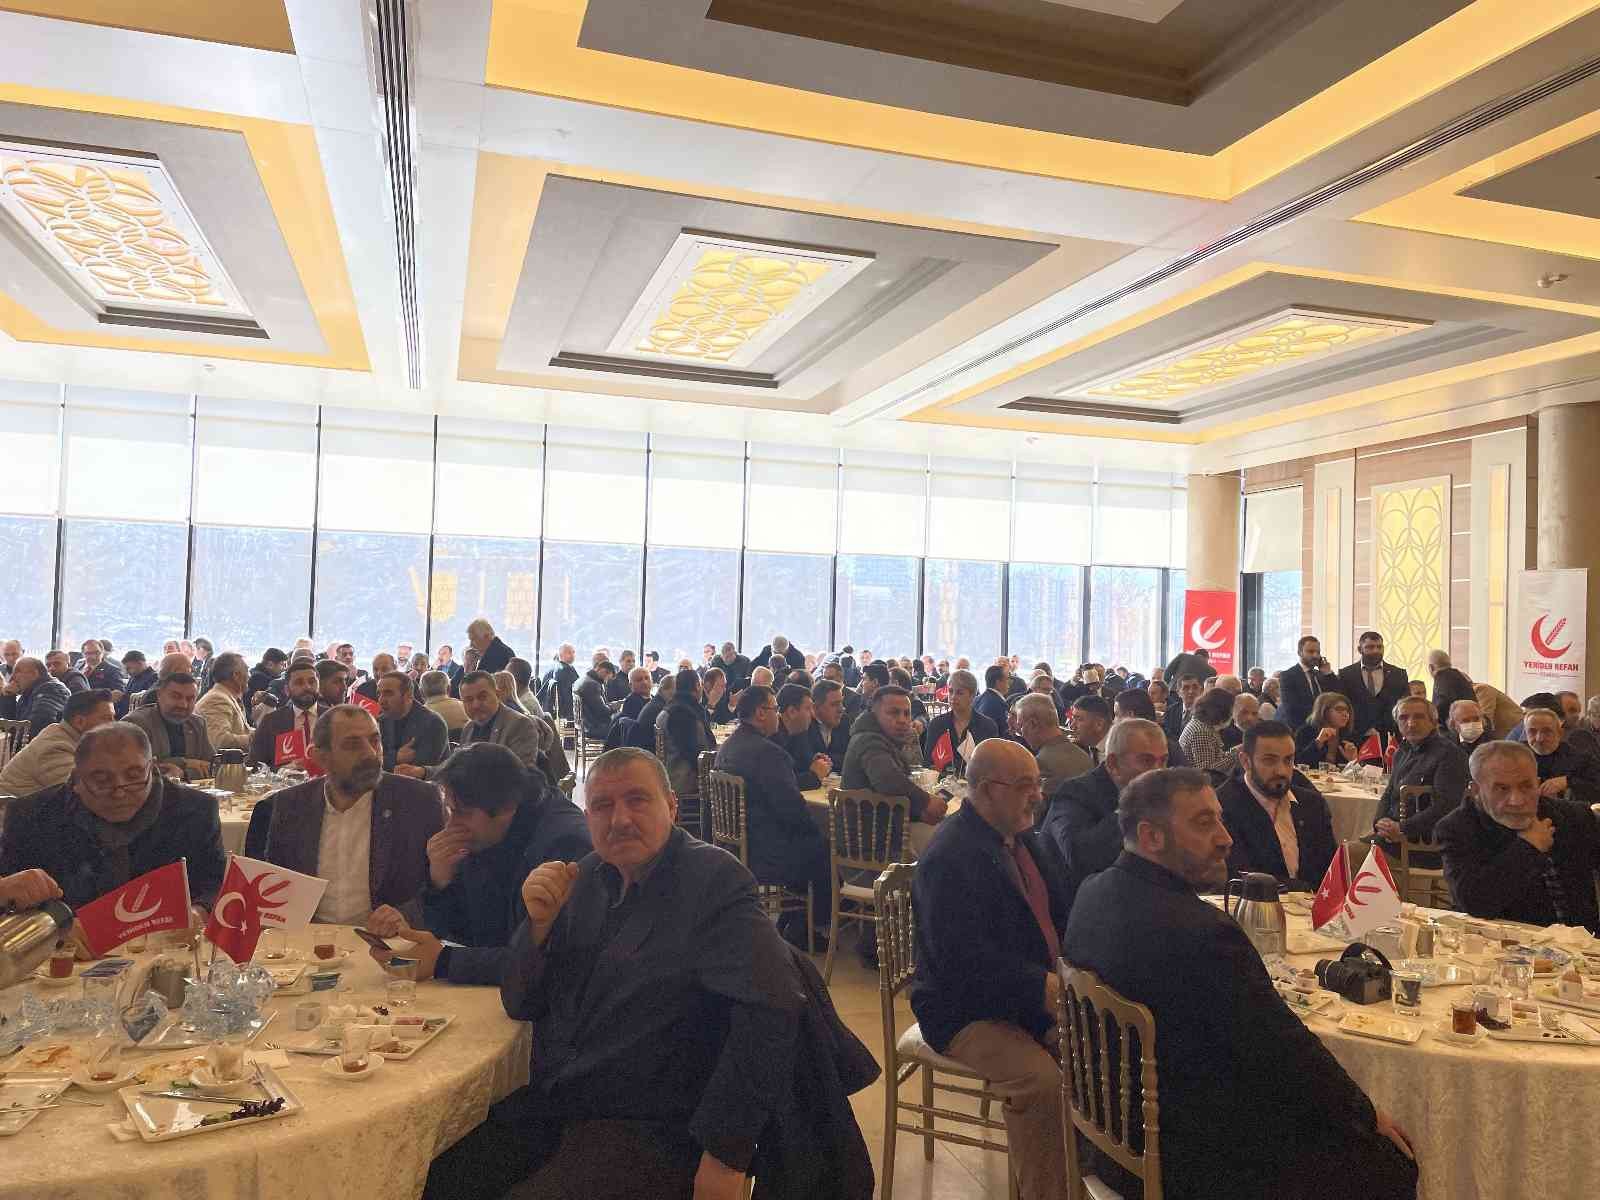 Yeniden Refah Partisi Genel Başkanı Dr. Fatih Erbakan, İstanbul’daki bazı ilçelerin muhtarları ile kahvaltıda bir araya geldi. Erbakan, iktidar ...